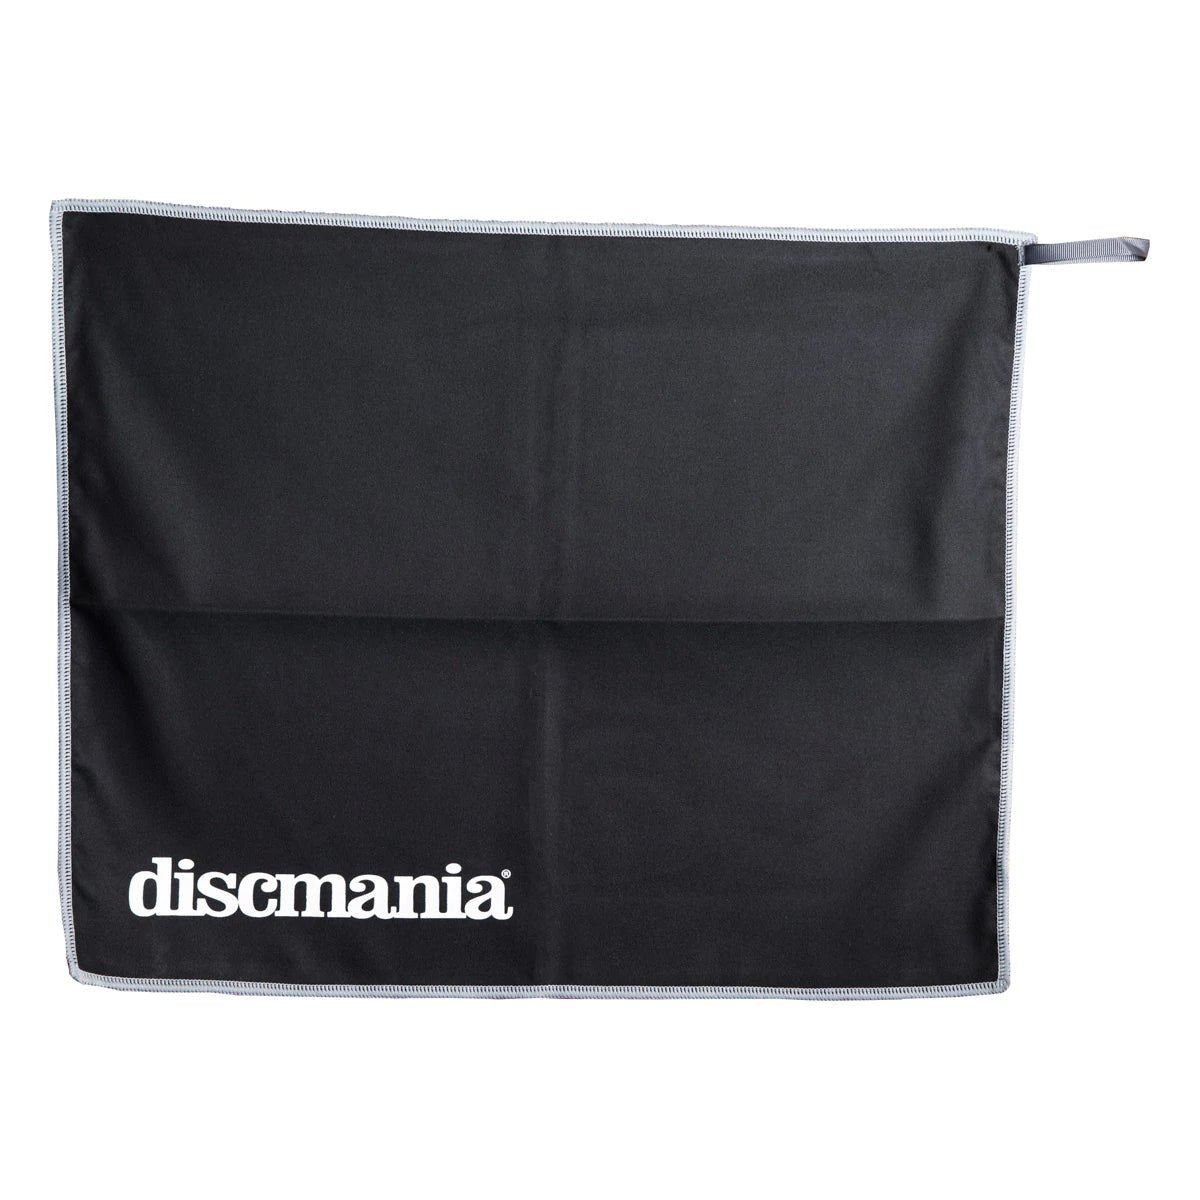 Discmania Discmania Tech Towel Disc Golf